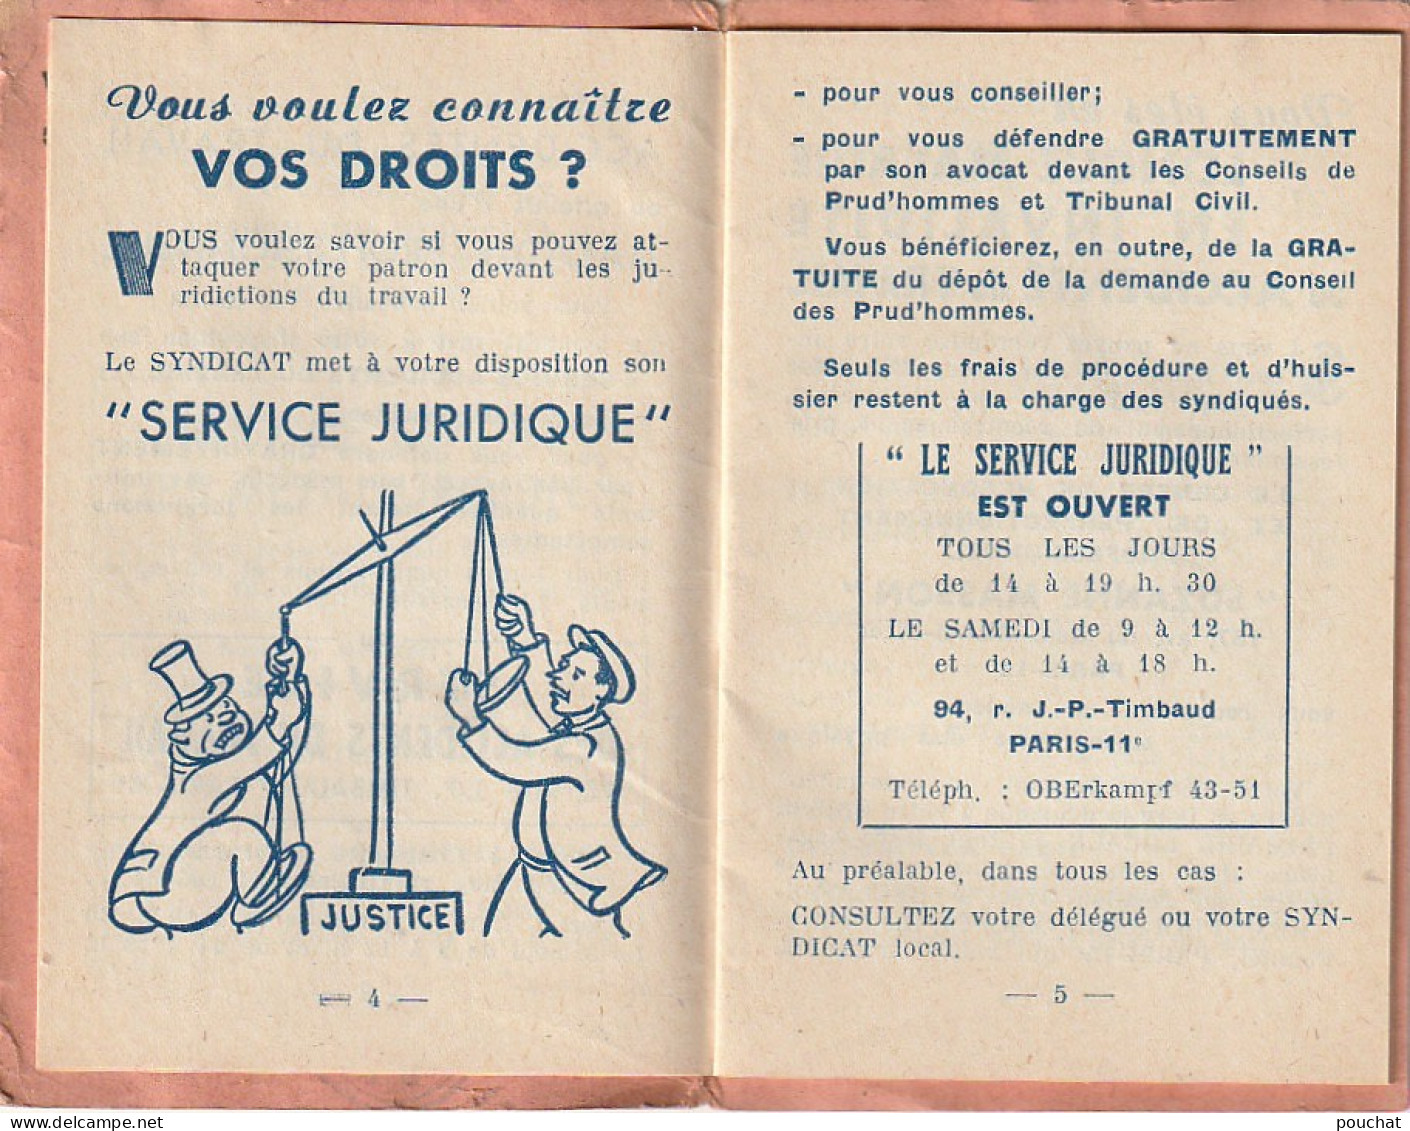 ZY 113- CARTE FEDERATION DES TRAVAILLEURS DE LA METALLURGIE C. G. T. (1956) PANTIN - CARTE 3 VOLETS , LIVRET COMPLET - Mitgliedskarten